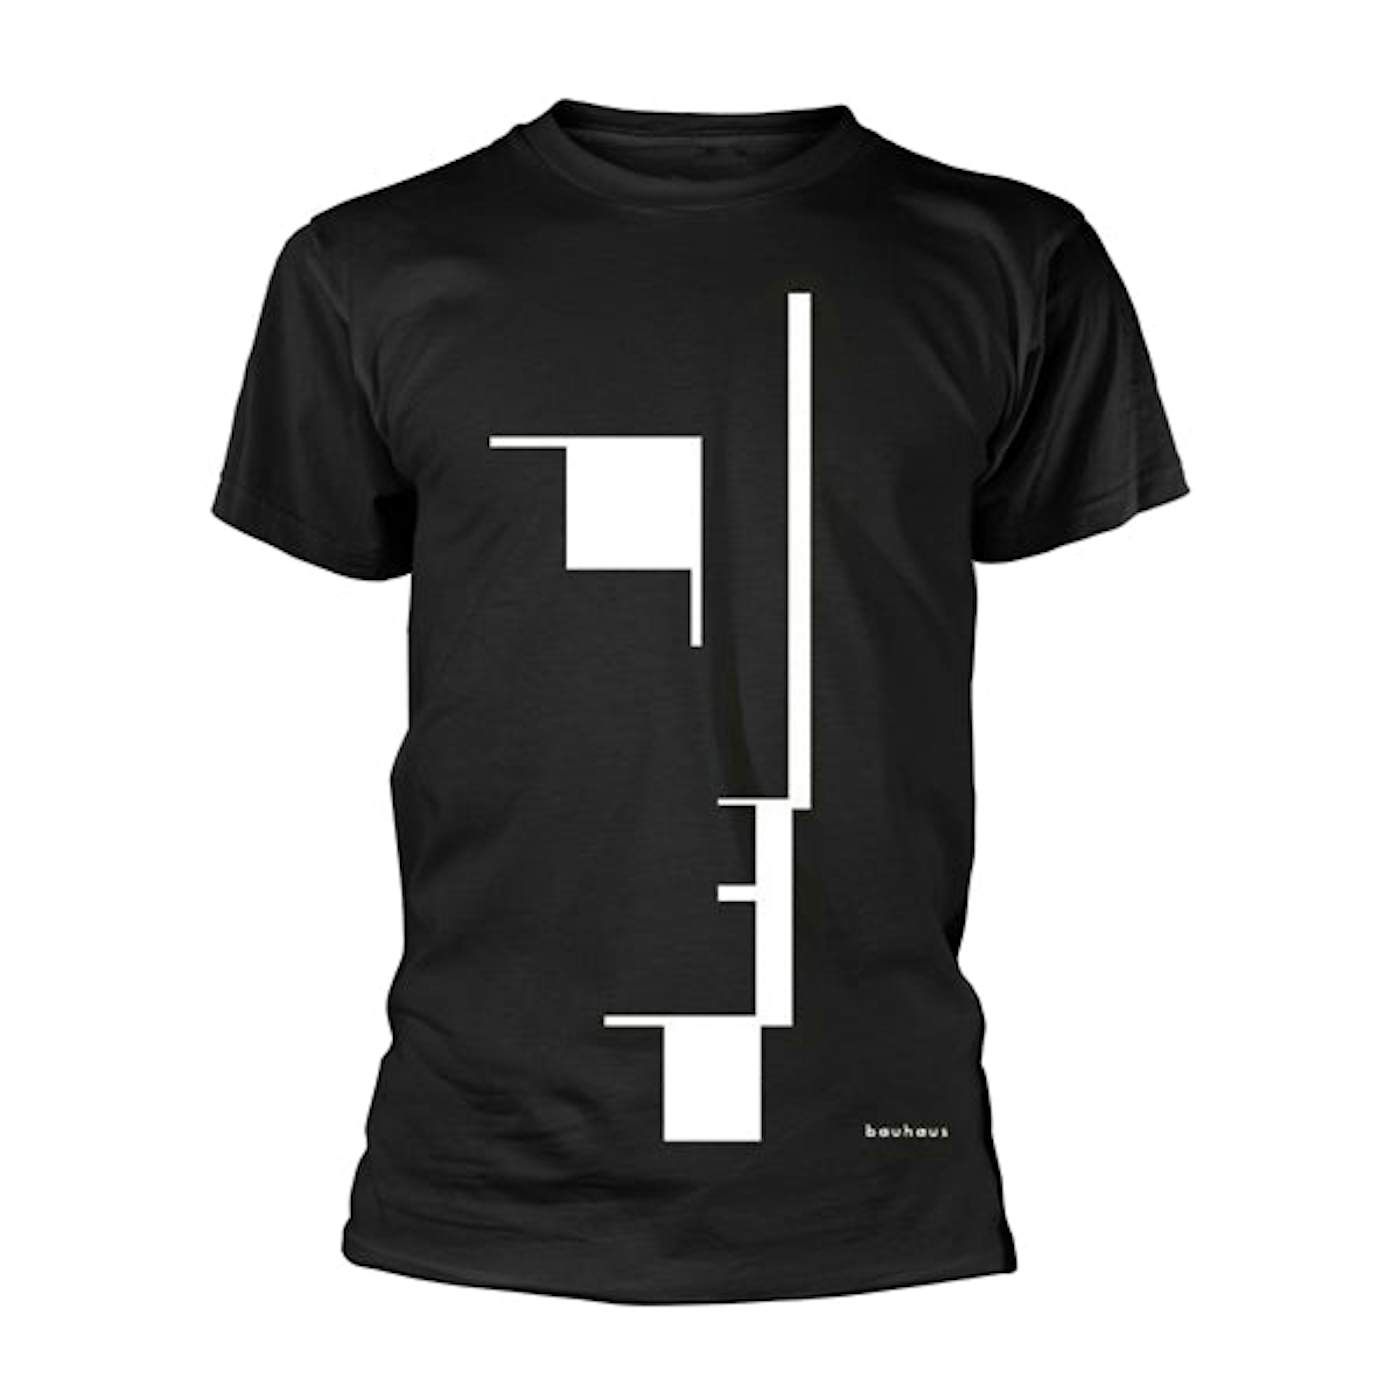 Bauhaus T-Shirt - Big Logo